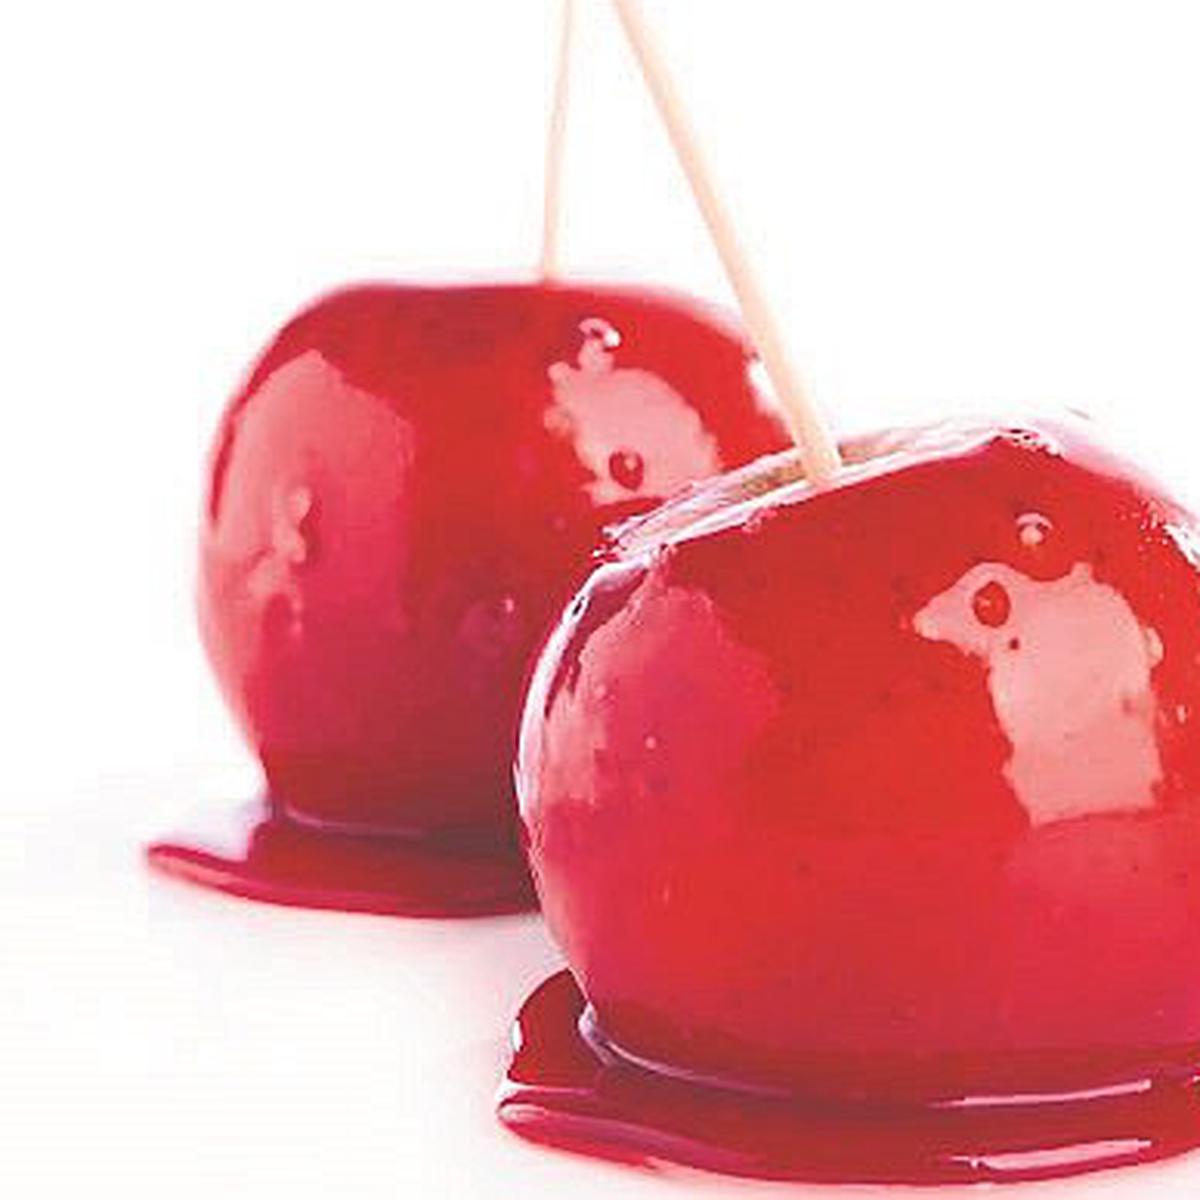 Manzanas acarameladas: ¿cómo prepararlas? | Receta | MUJER | OJO